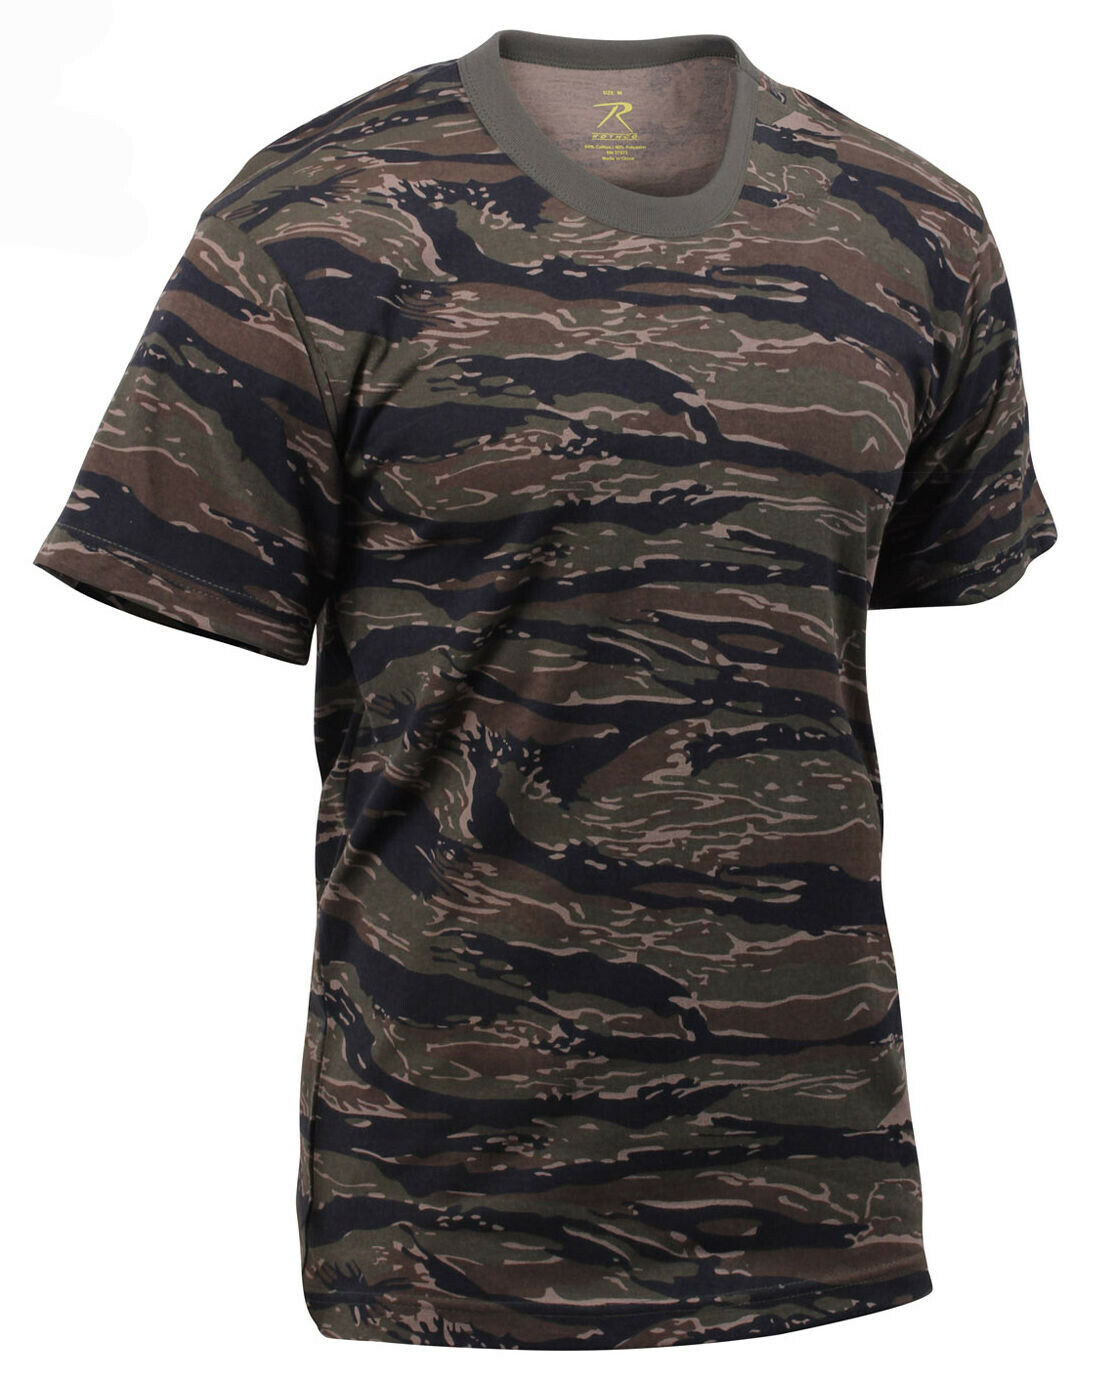 Rothco Camo T-Shirt - Tiger Stripe Camo